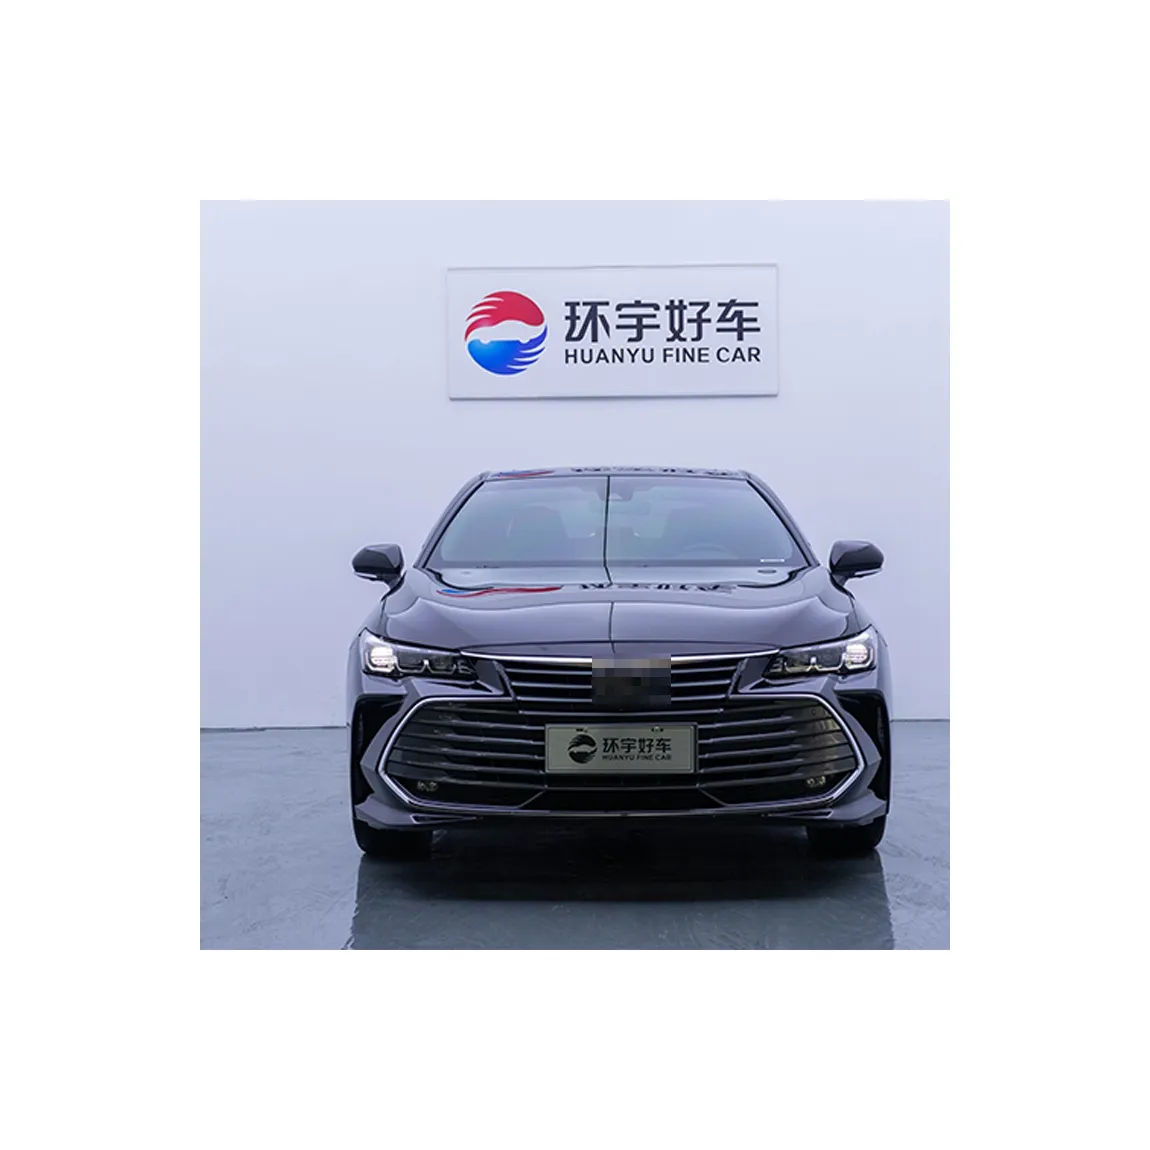 אטרקטיבי מחיר חדש טוב Sal זול מסין סין משמש מכוניות מחיר